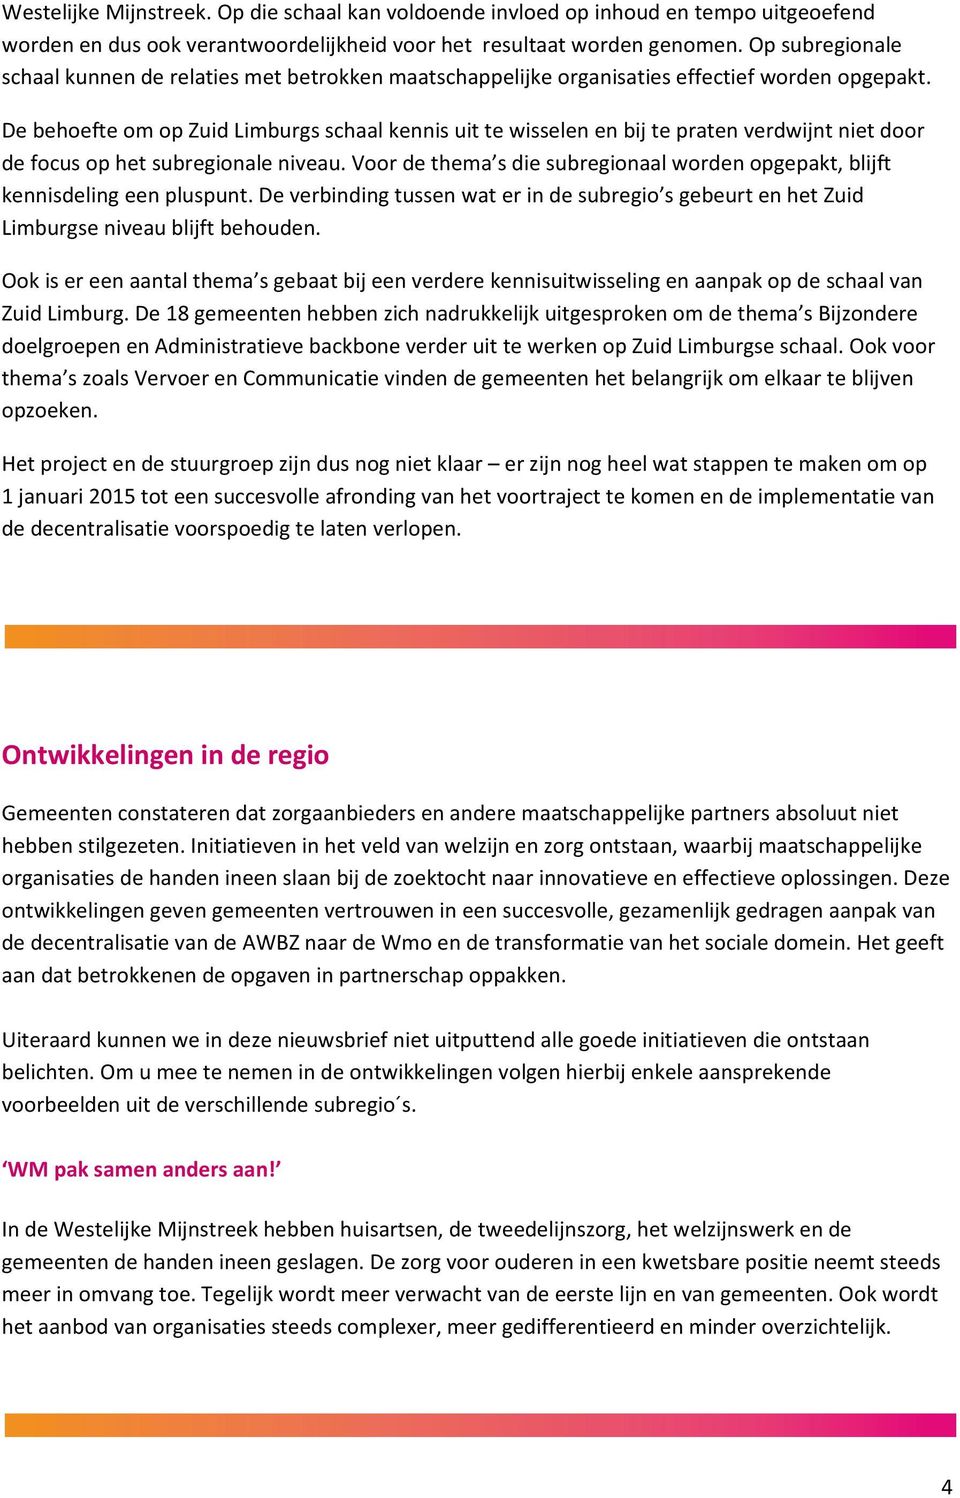 De behoefte om op Zuid Limburgs schaal kennis uit te wisselen en bij te praten verdwijnt niet door de focus op het subregionale niveau.